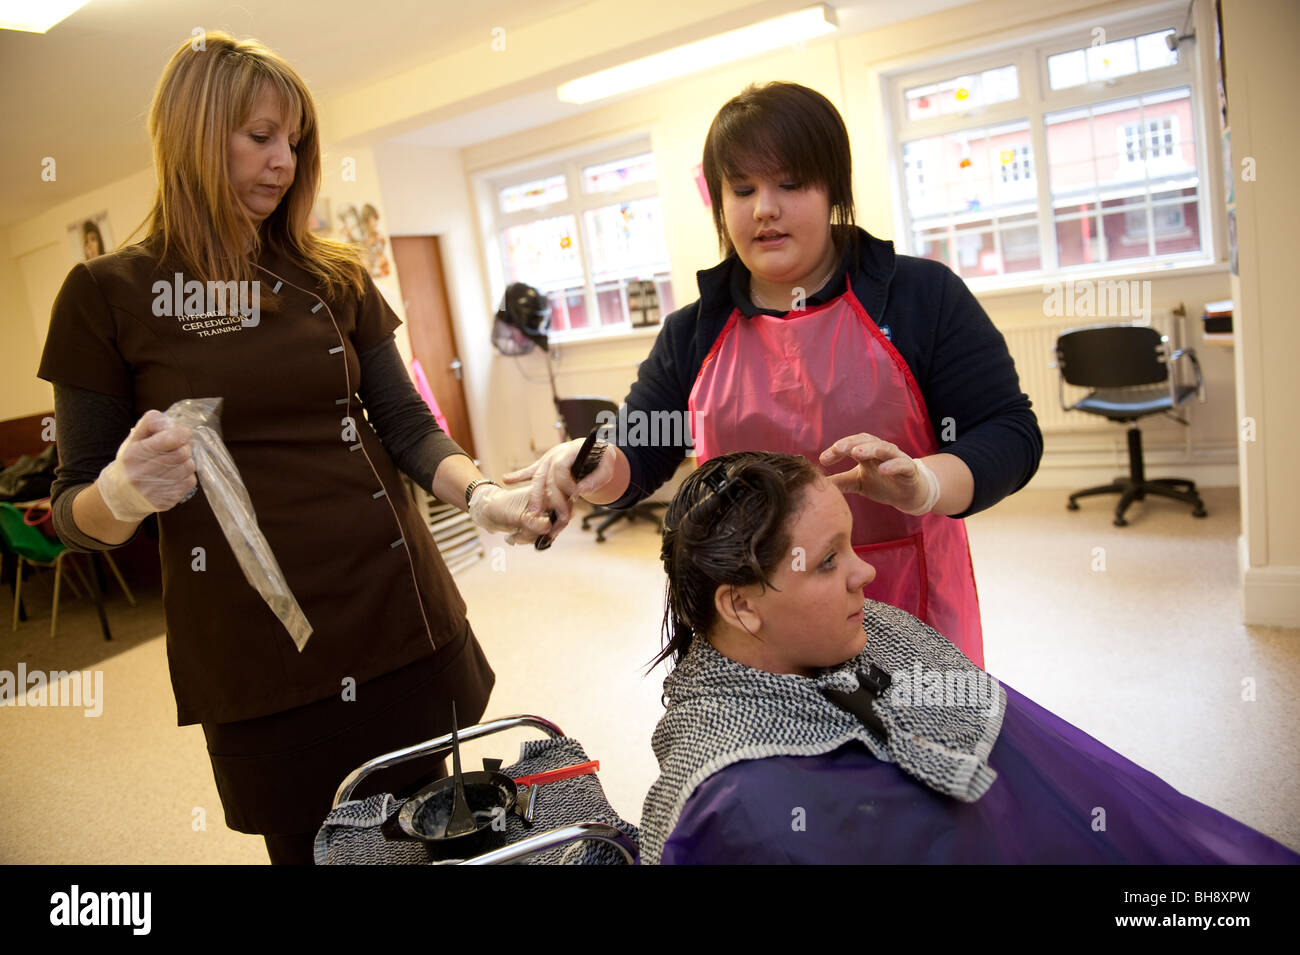 Una donna tutor professionale insegnare abilità di parrucchiere a due ragazze adolescenti nella scuola secondaria, REGNO UNITO Foto Stock